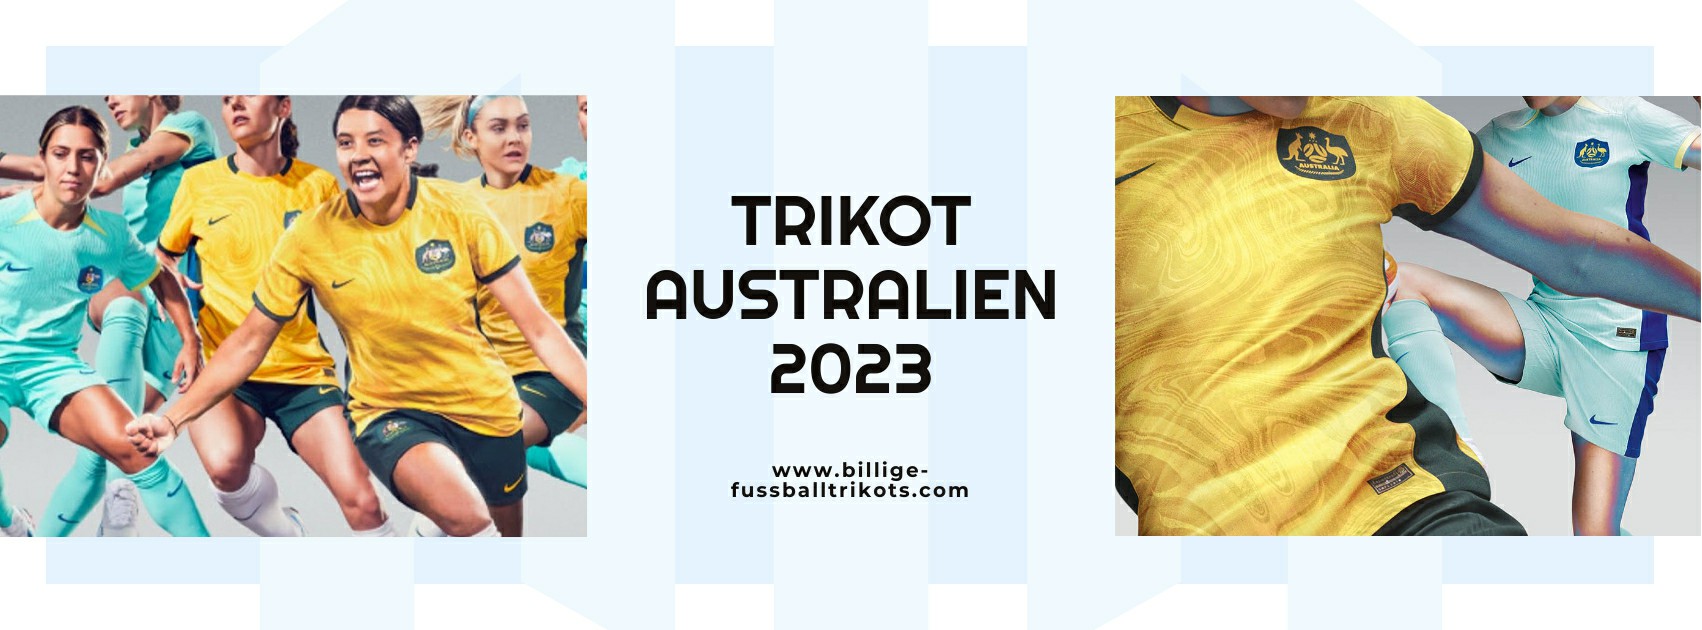 Australien Trikot 2023-2024